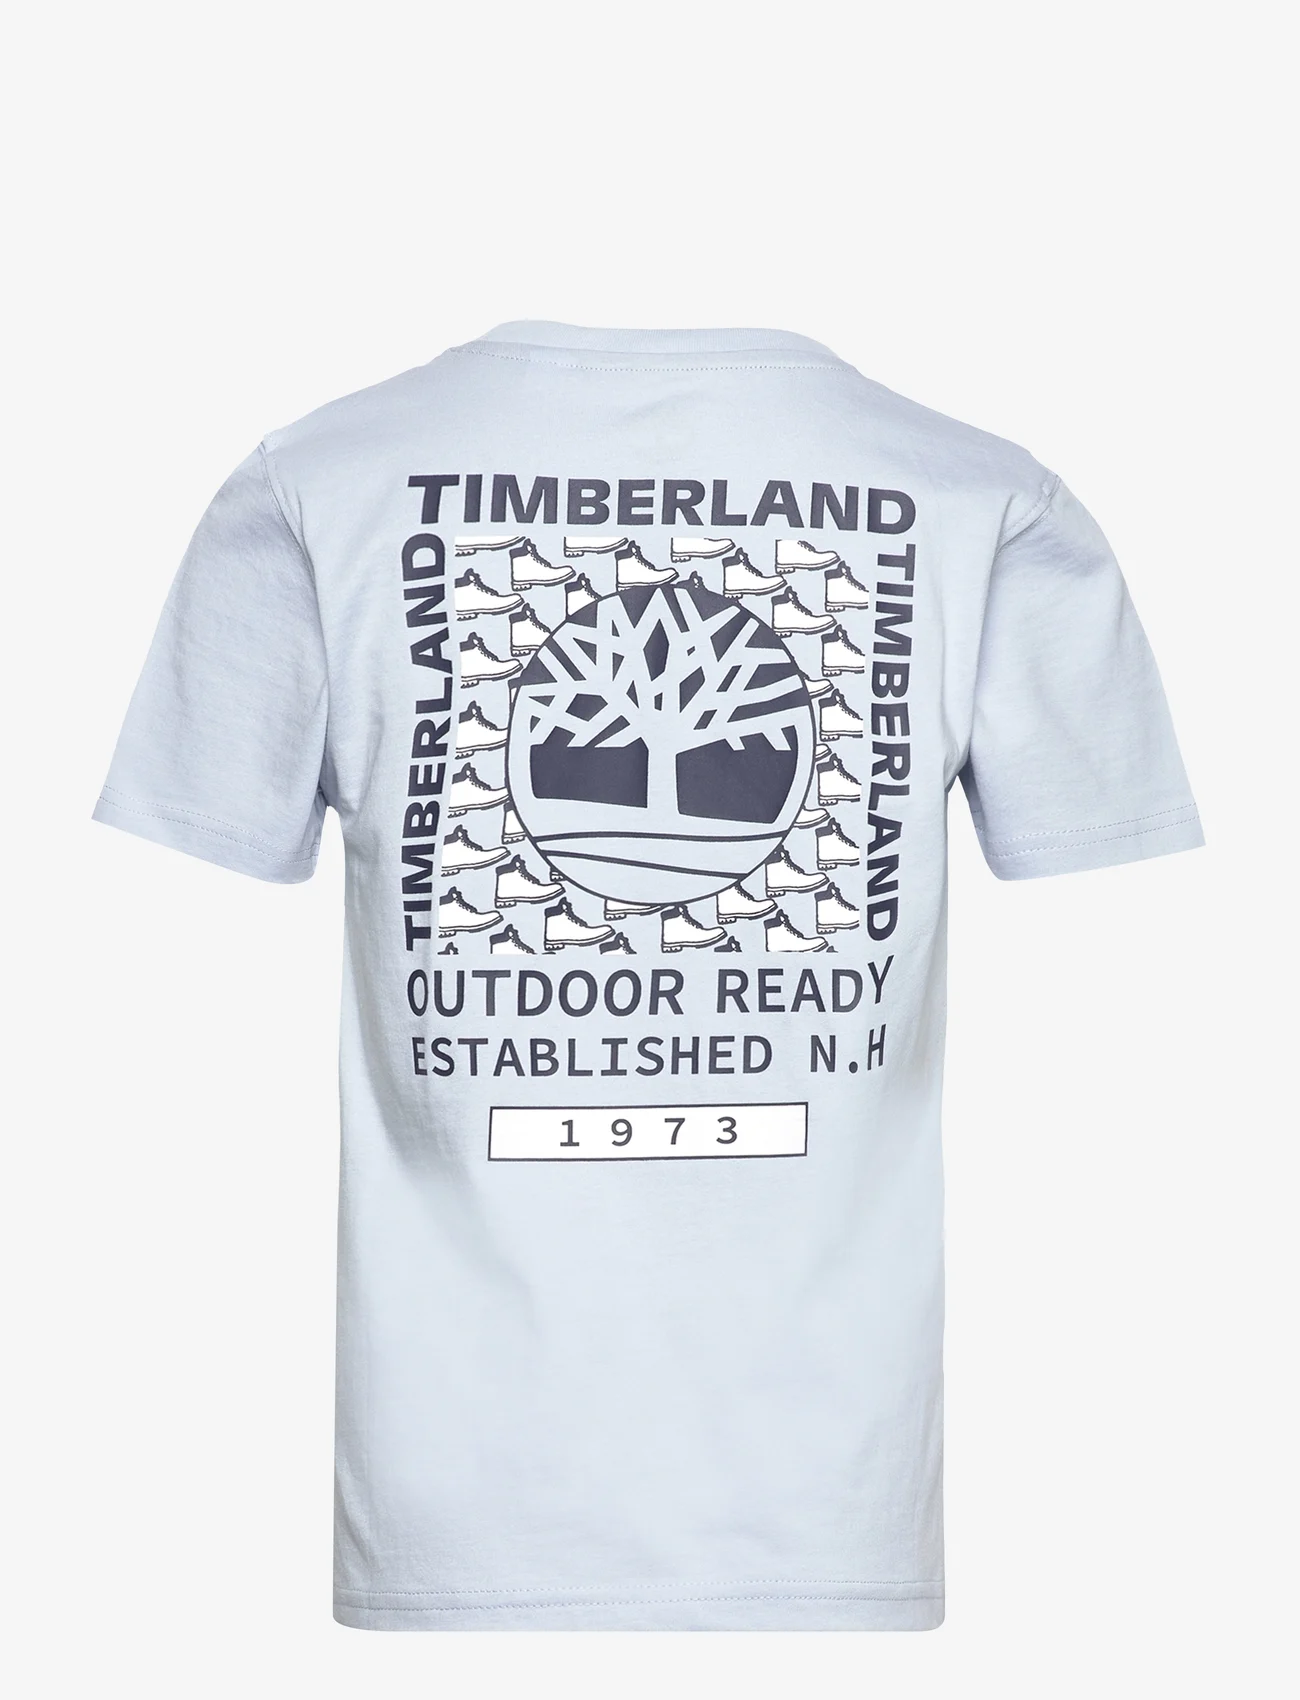 Timberland - SHORT SLEEVES TEE-SHIRT - lyhythihaiset t-paidat - fjord - 1